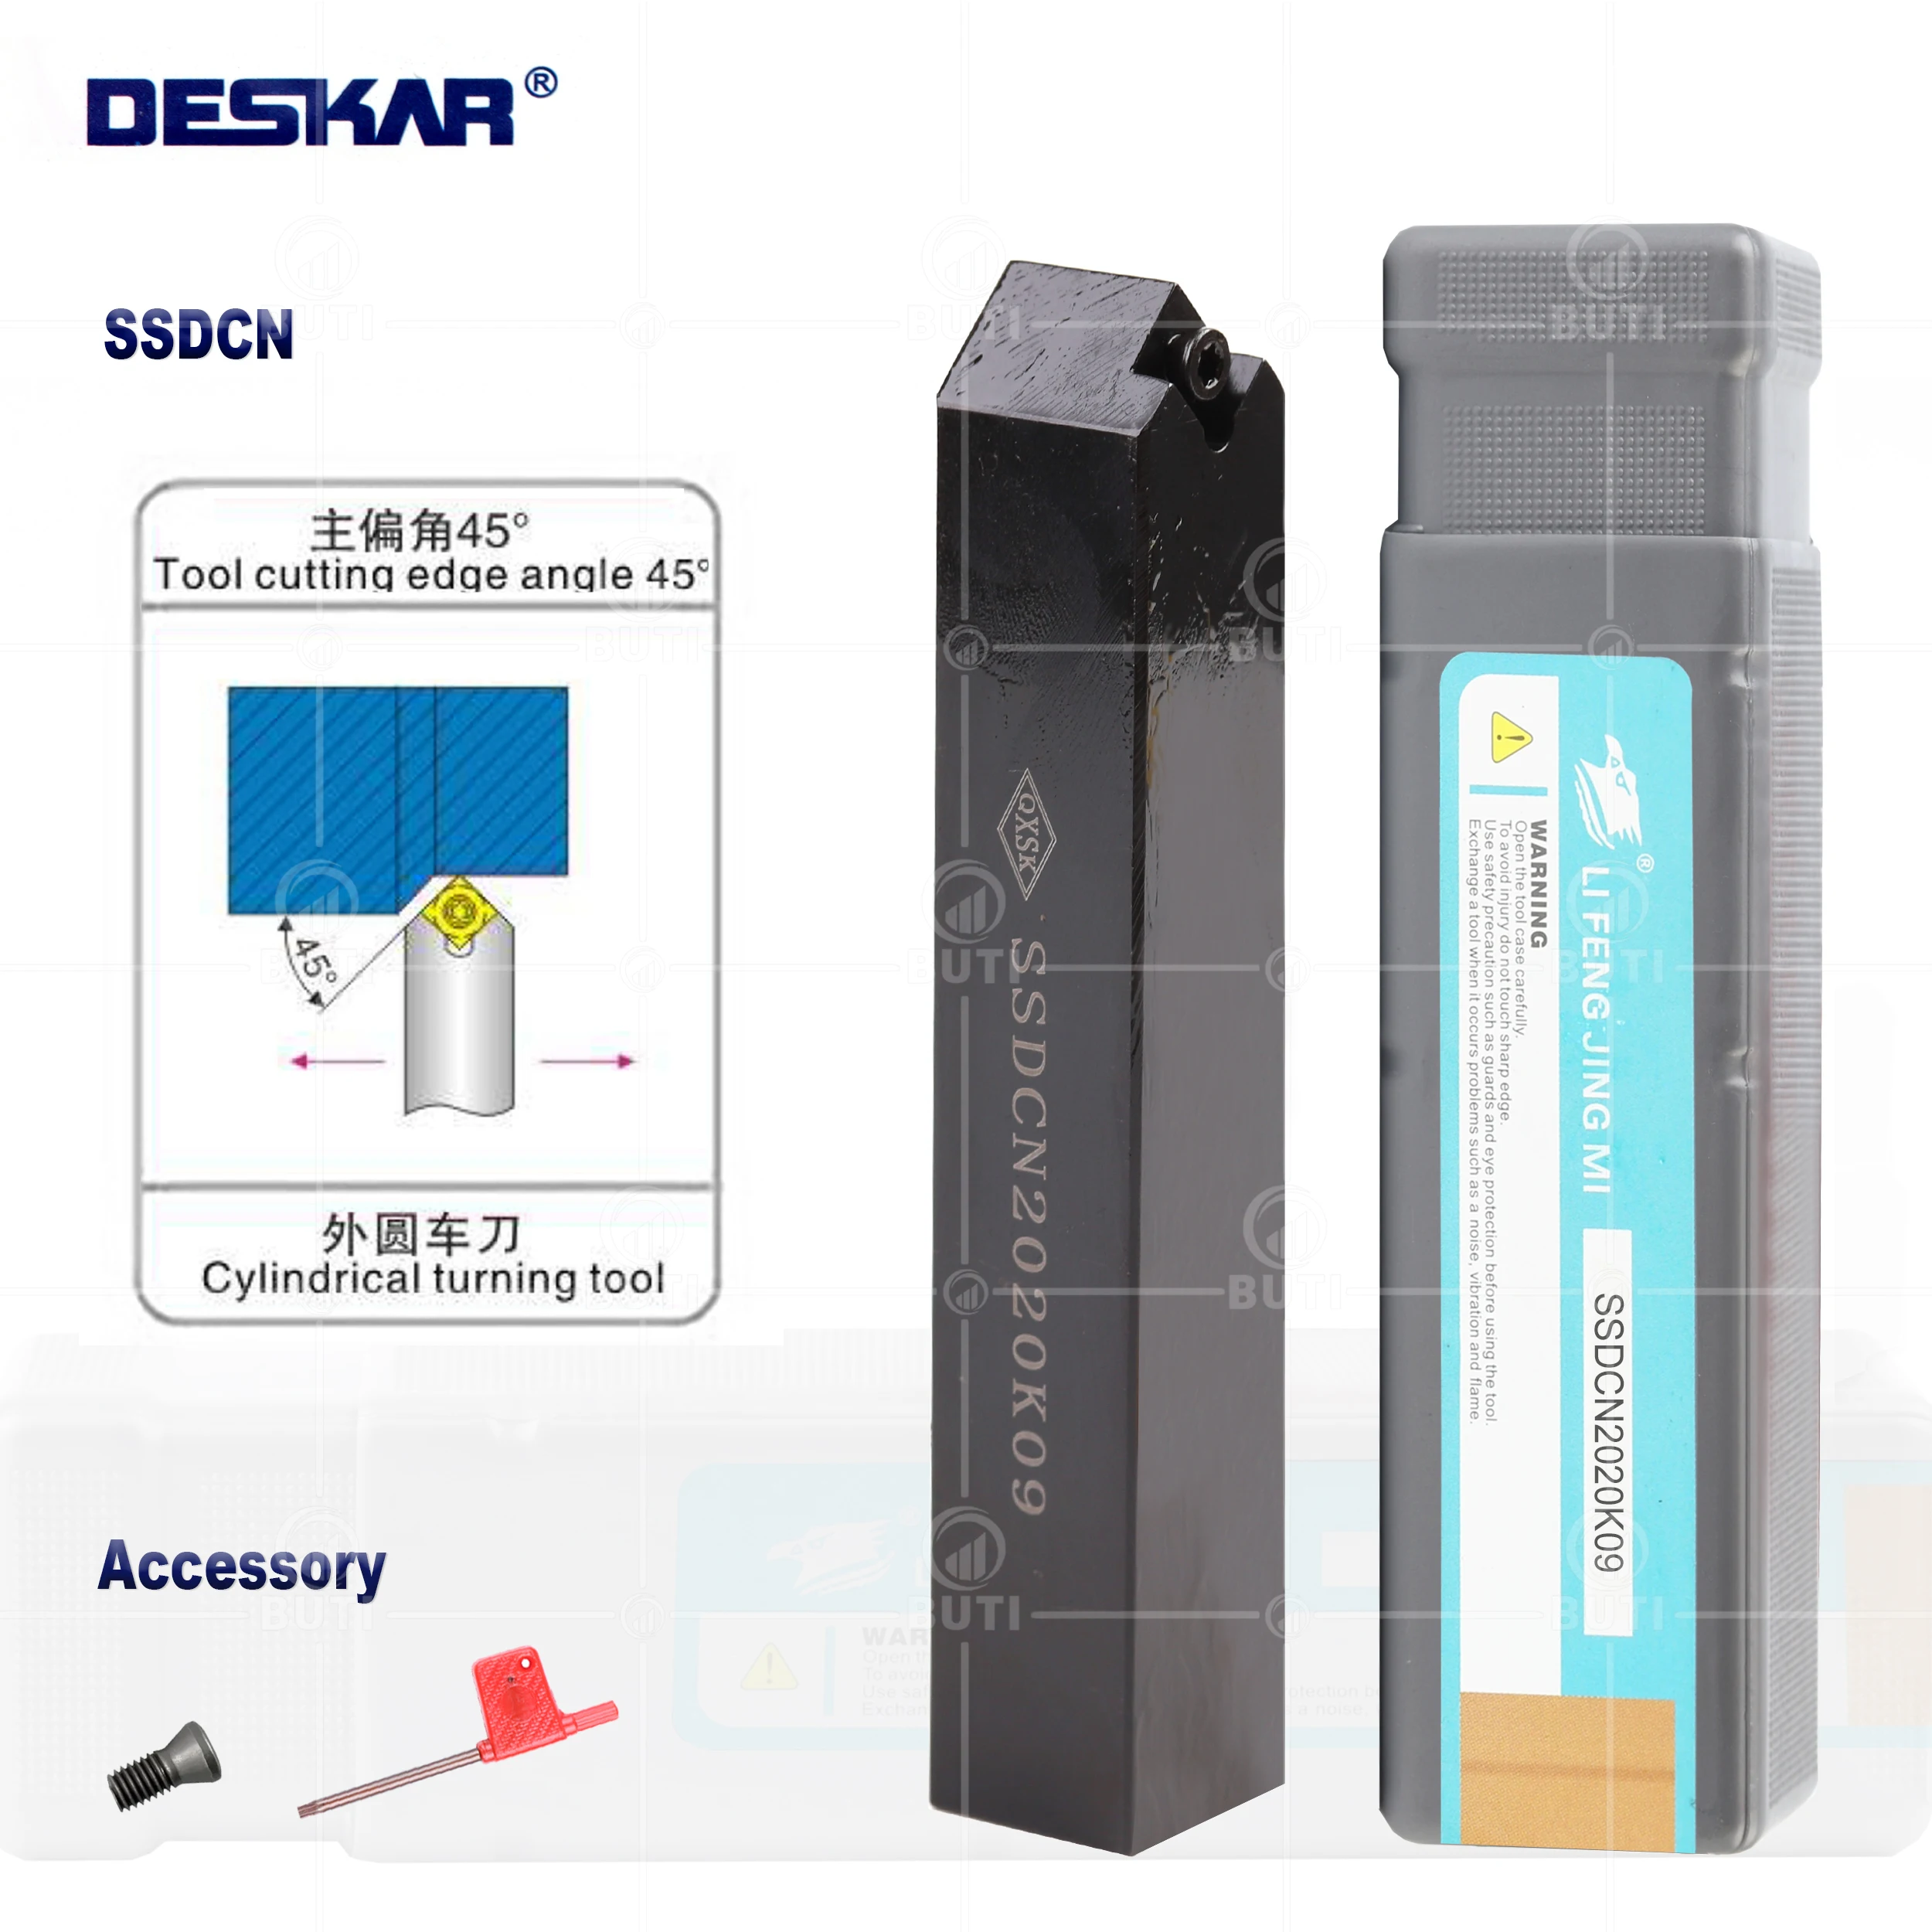 DESKAR 100% Original SSDCN1212H09/1616H09/2020K09/2525M12 External Turning Tool Holder CNC Lathe Tools For SCMT Carbide Inserts